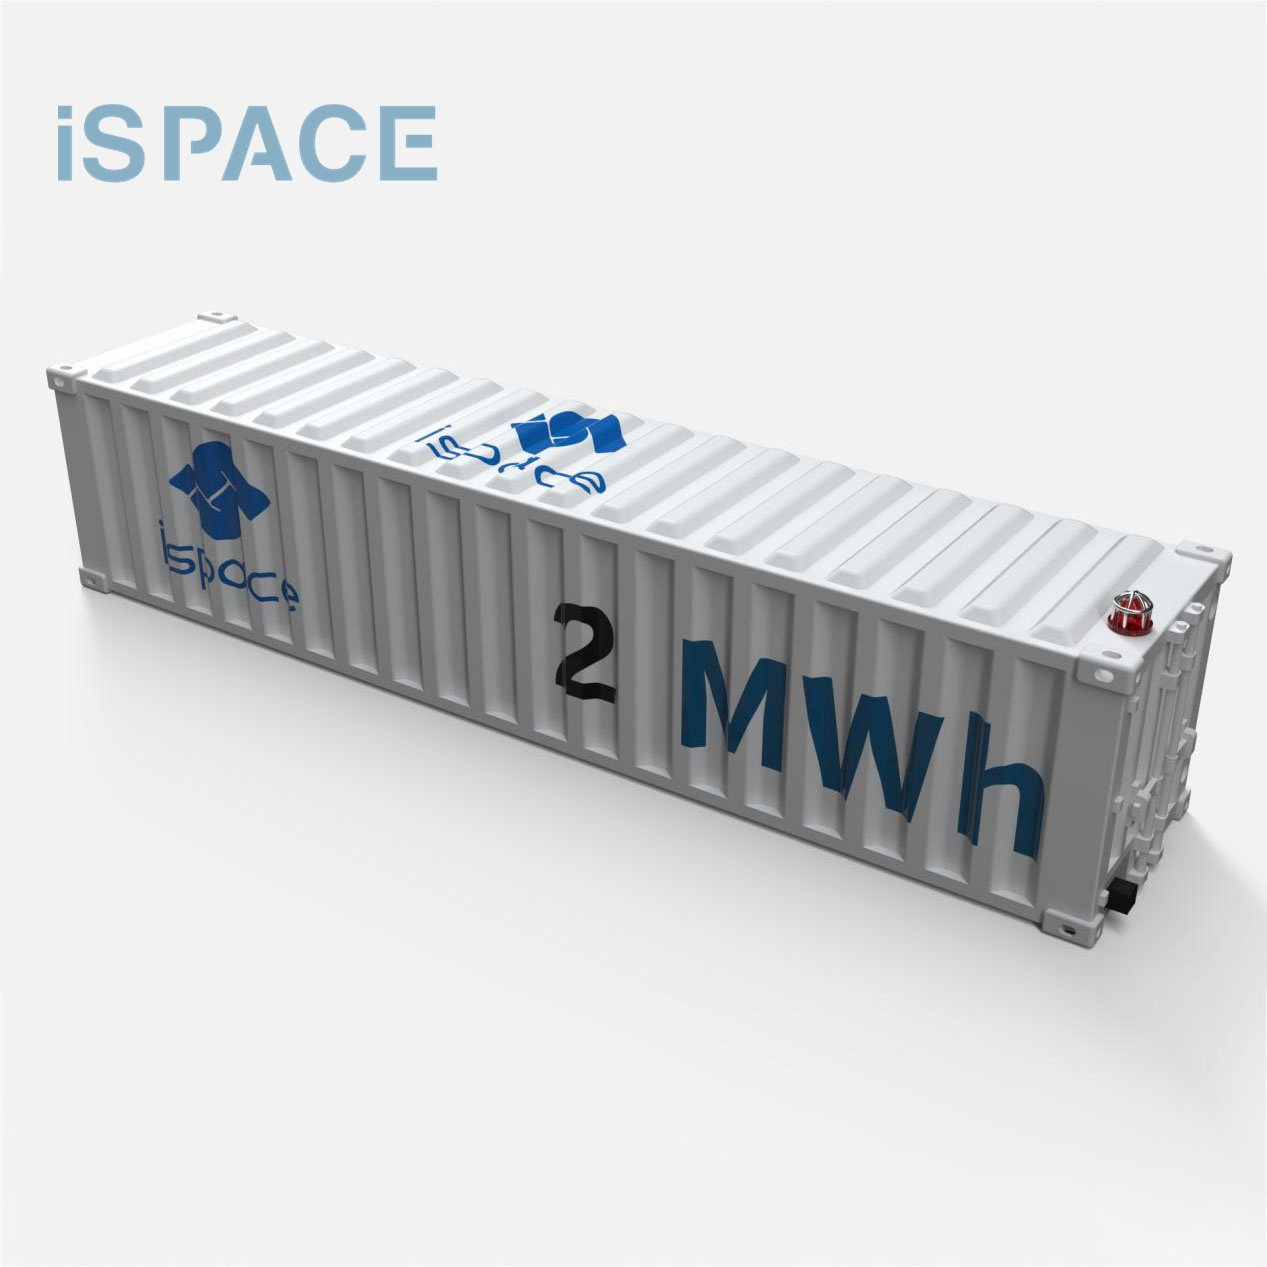 Hệ thống lưu trữ năng lượng container công nghiệp và thương mại kết hợp với hệ thống năng lượng mặt trời